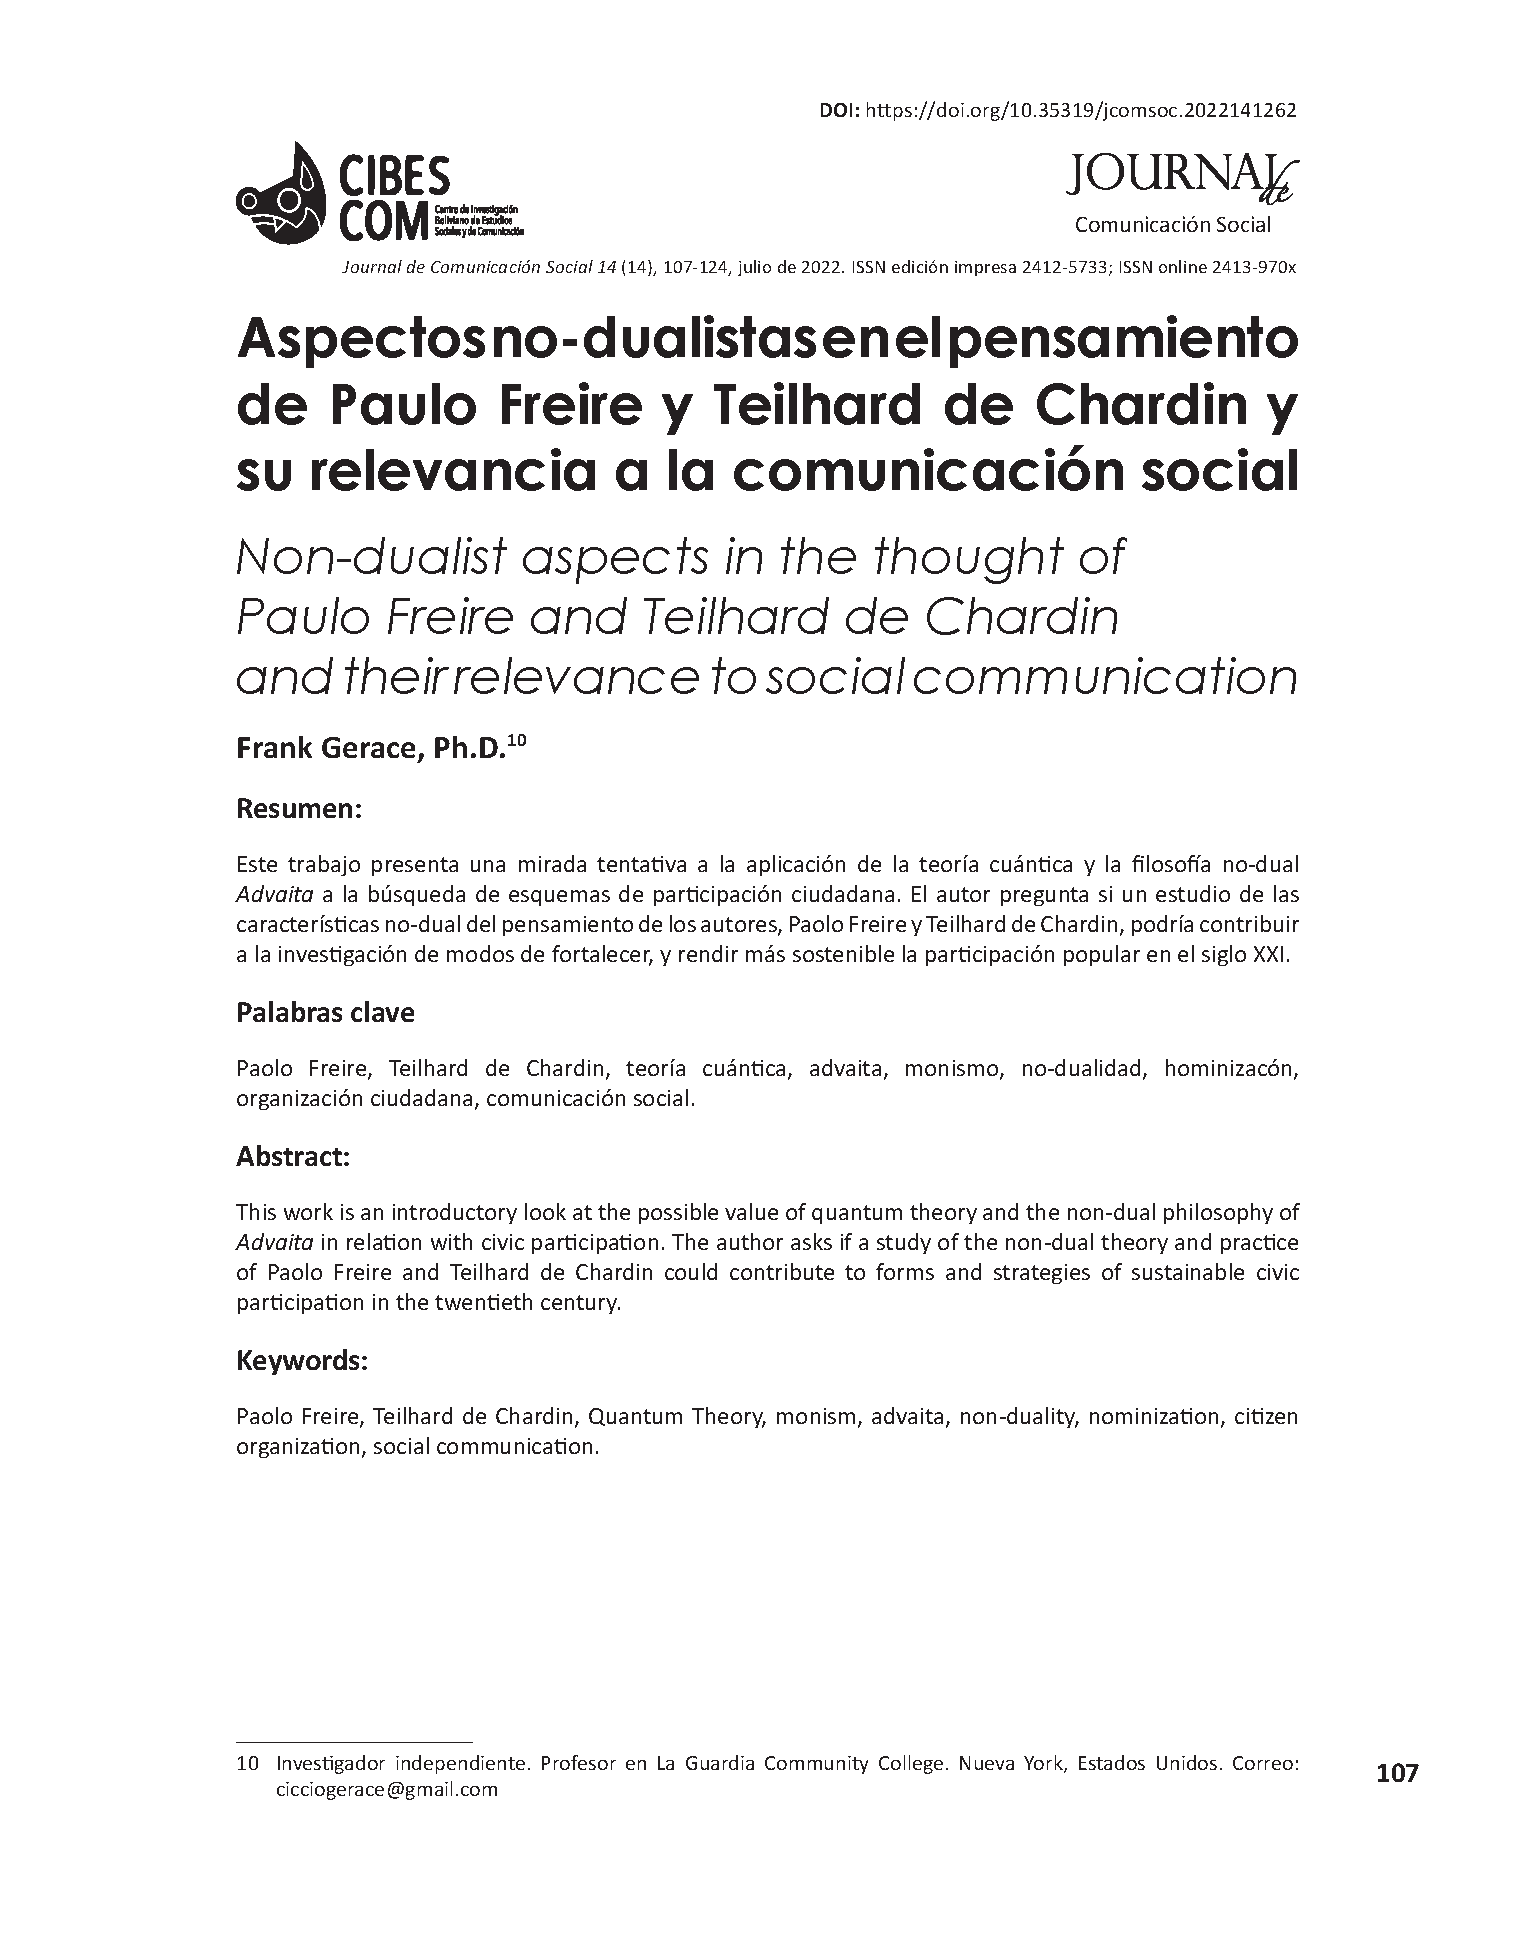 Aspectos no-dualistas en el pensamiento de Paulo Freire y Teilhard de Chardin y su relevancia a la comunicación social 